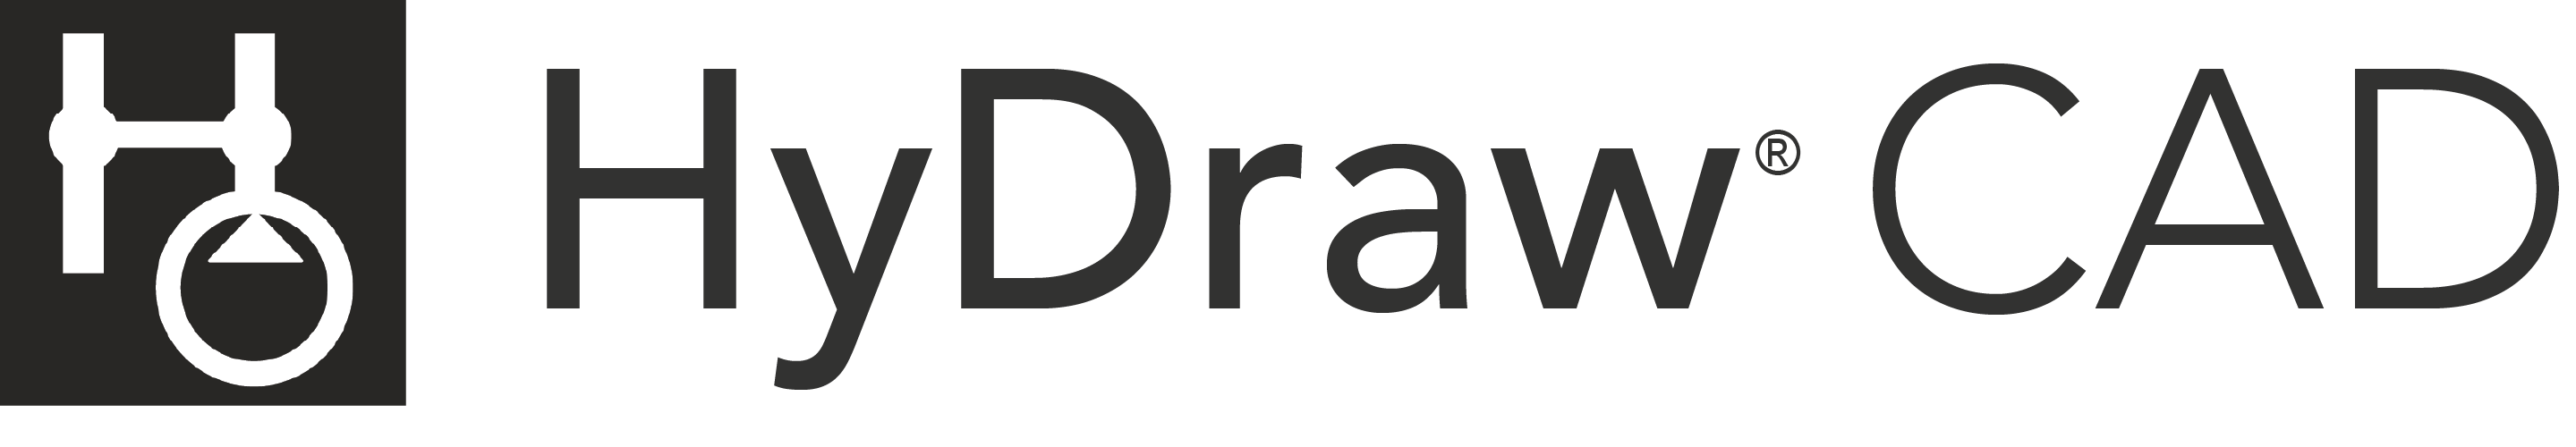 HyDraw CAD logo